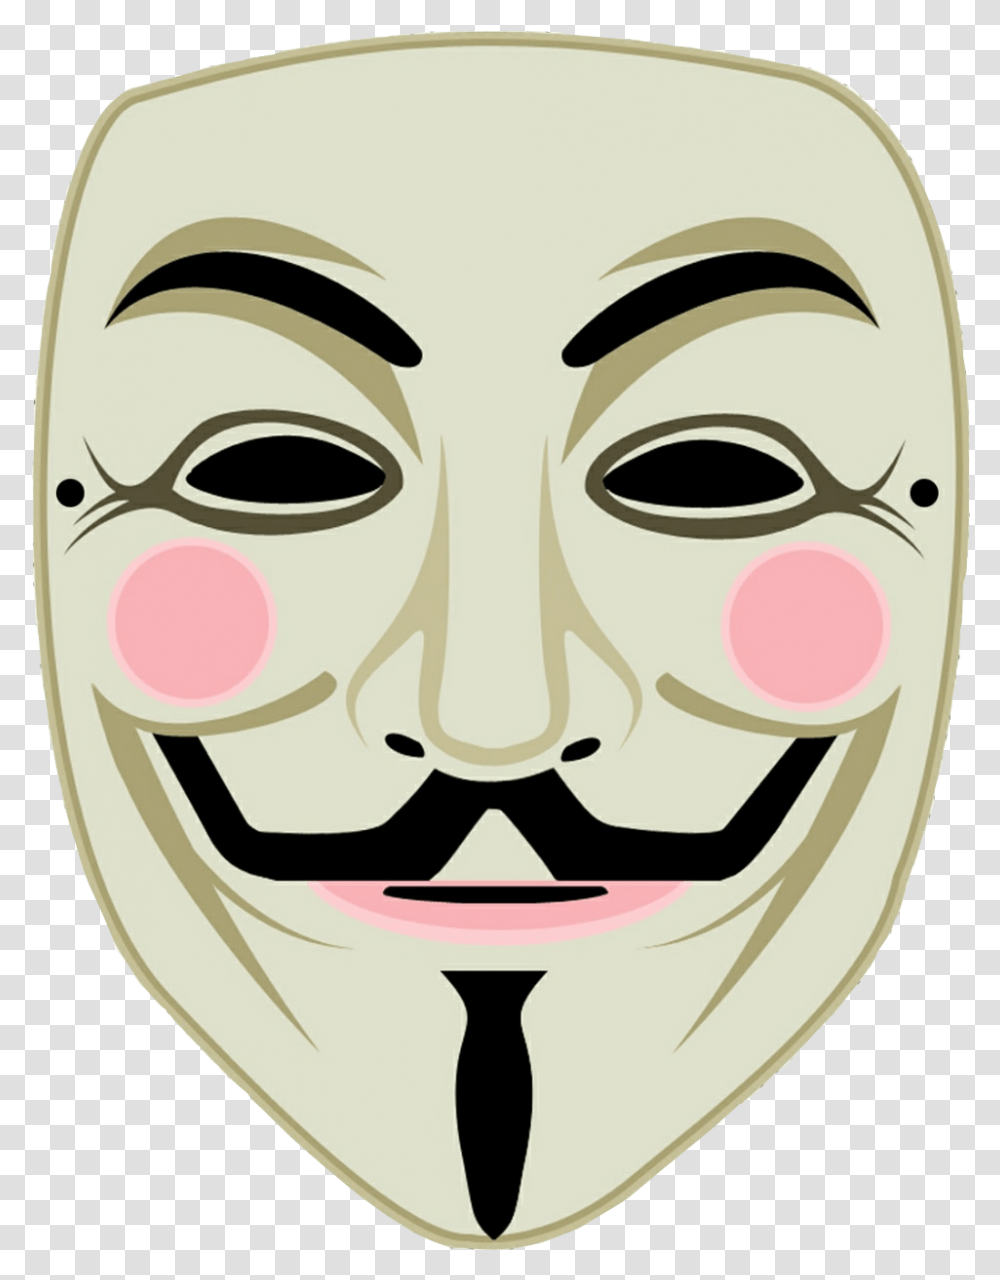 Gunpowder Plot Guy Fawkes Mask V For Vendetta Anonymous Printable V For Vendetta Mask Transparent Png